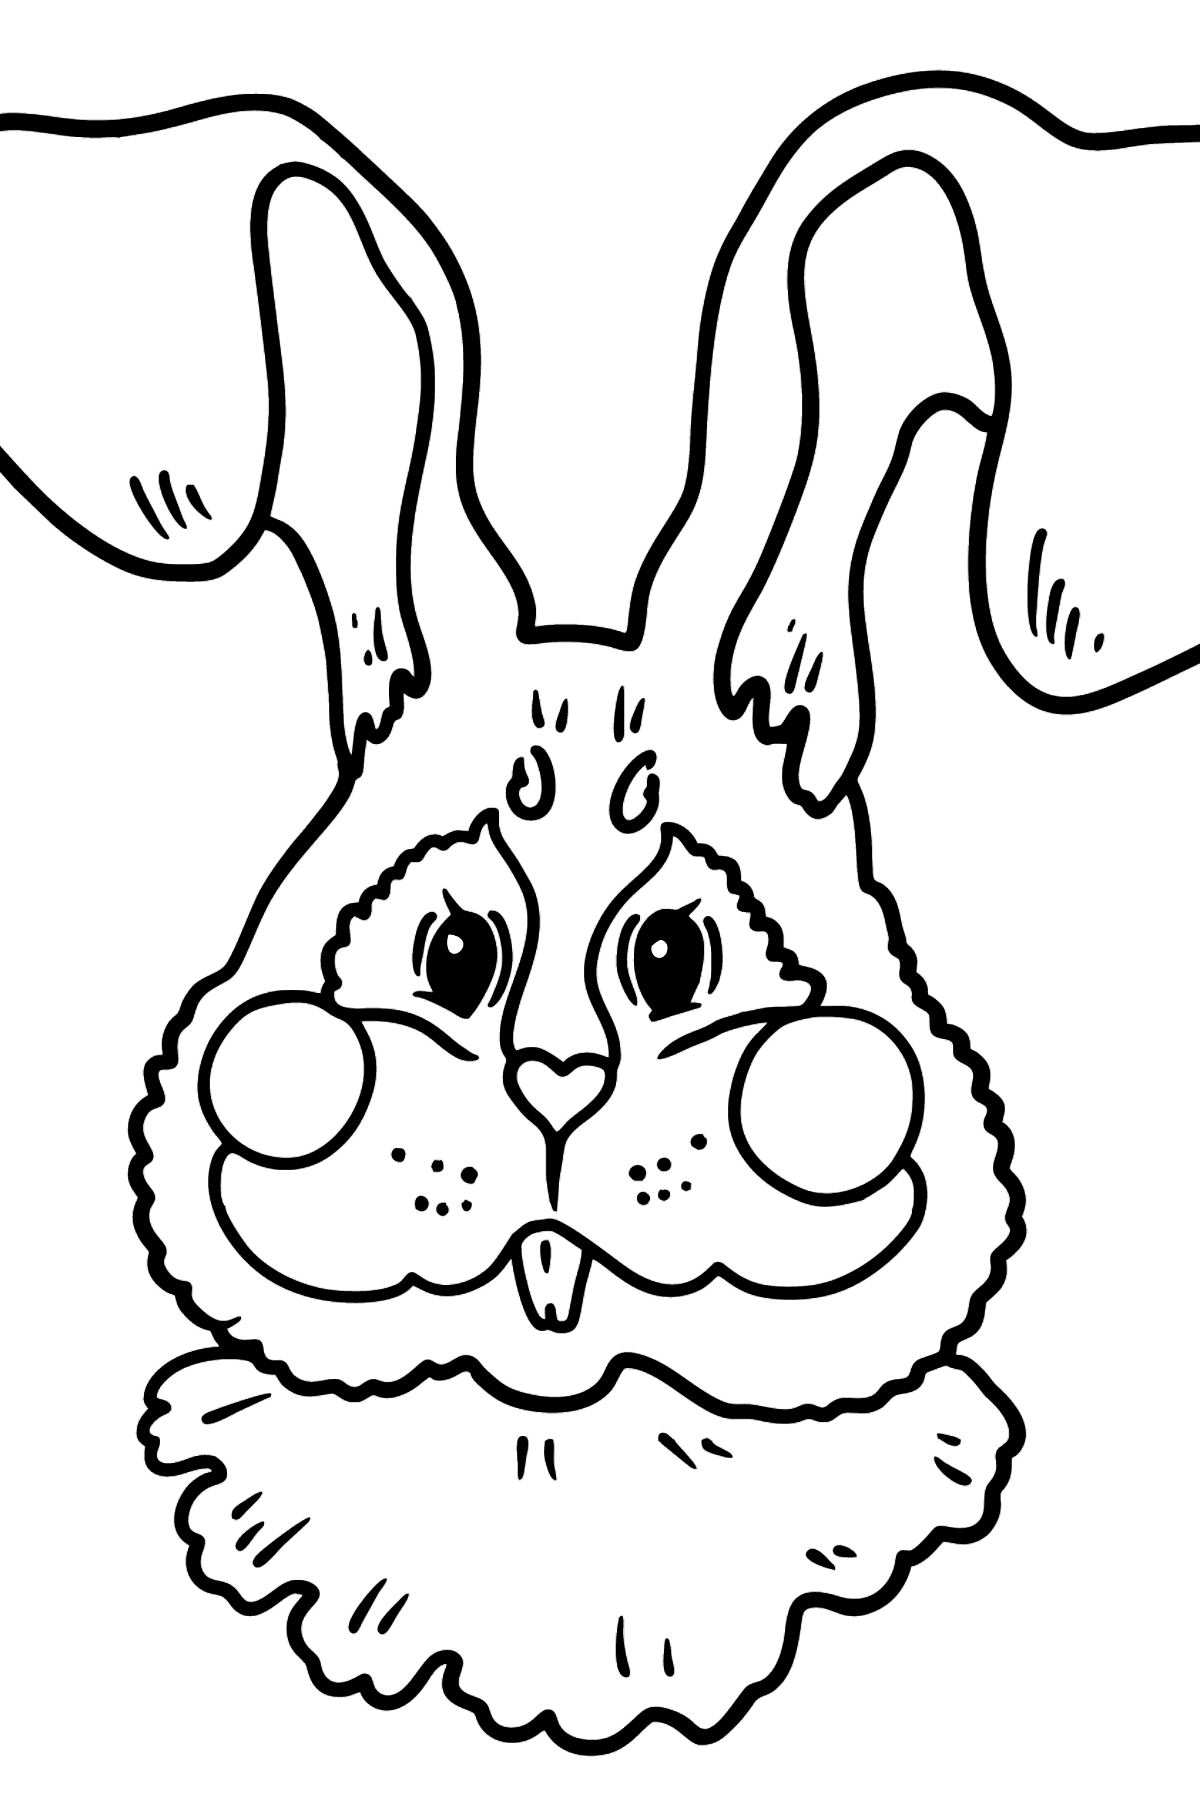 Dibujo de Cara de Conejo para colorear - Dibujos para Colorear para Niños